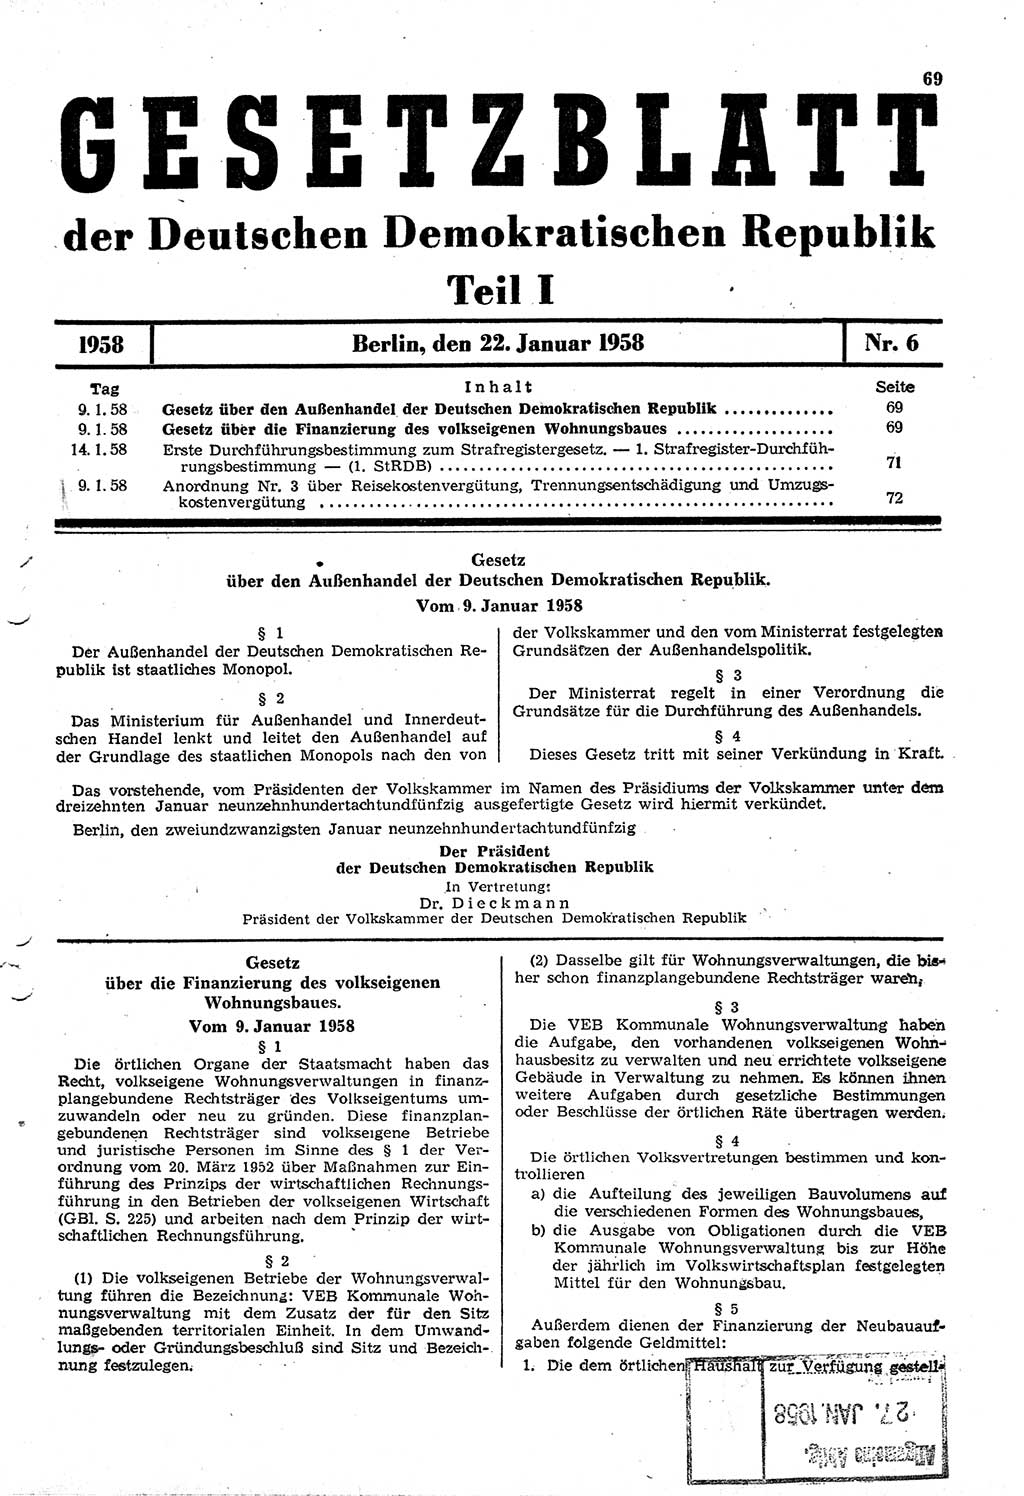 Gesetzblatt (GBl.) der Deutschen Demokratischen Republik (DDR) Teil Ⅰ 1958, Seite 69 (GBl. DDR Ⅰ 1958, S. 69)